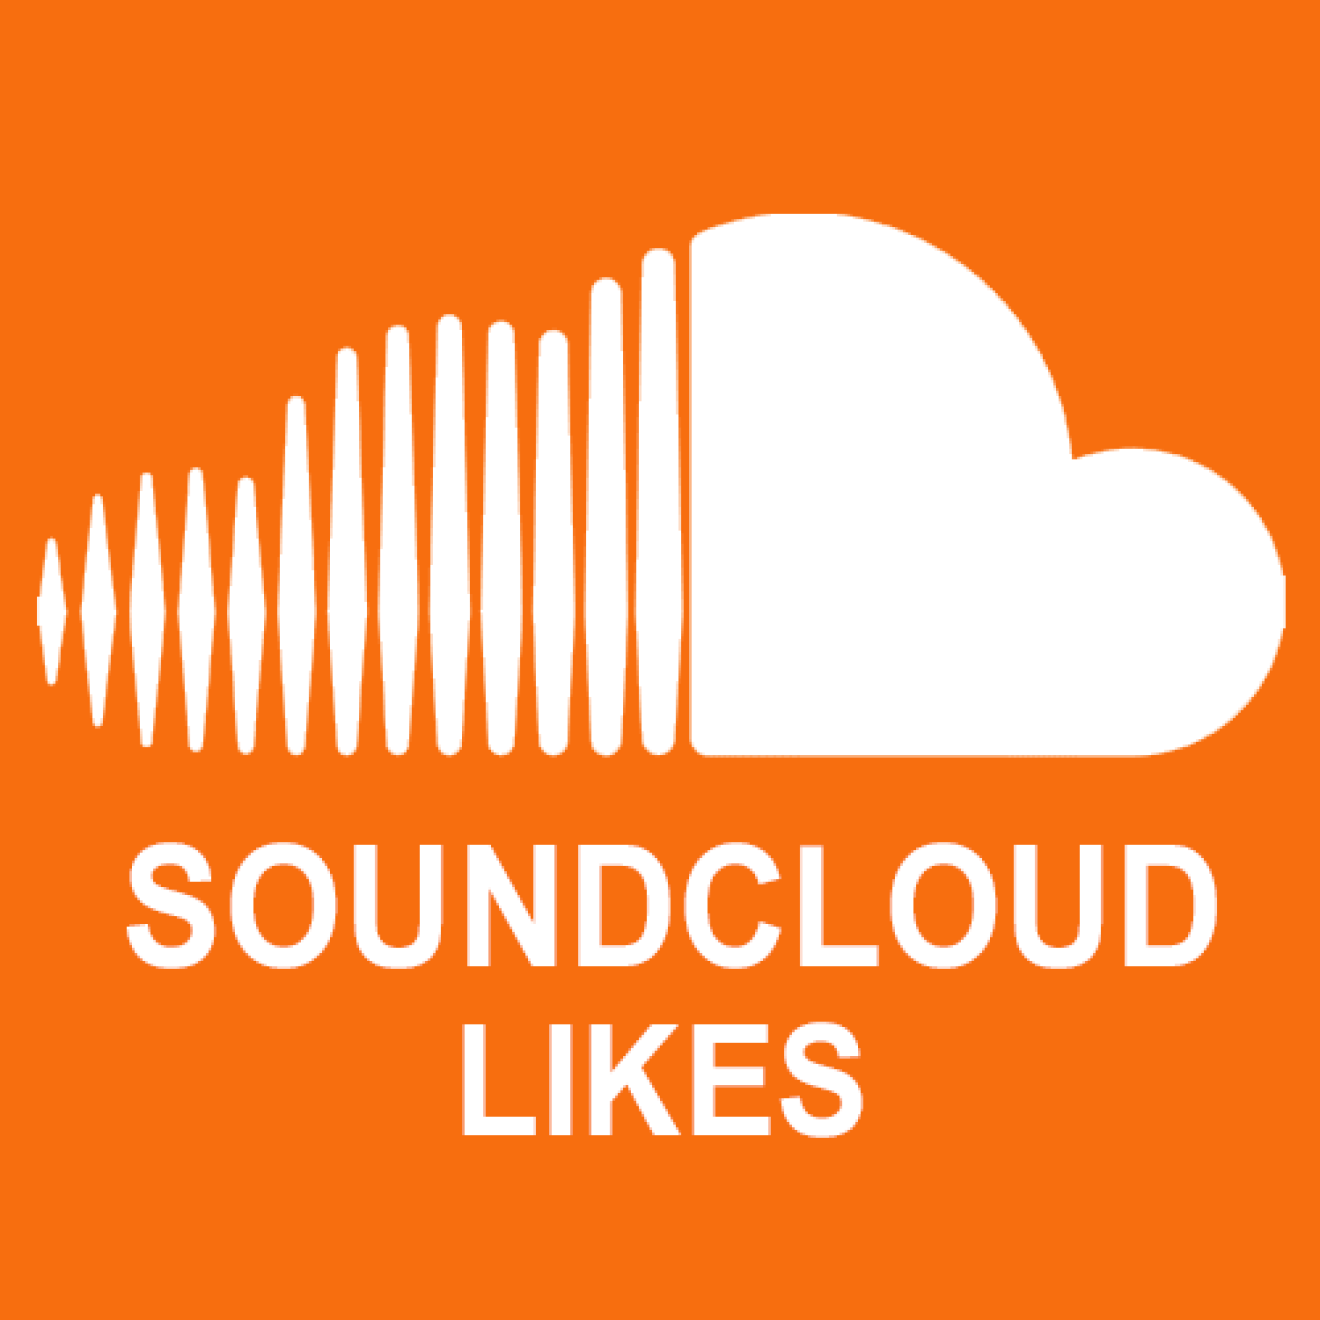 10000 Soundcloud Likes / Gefällt mir Angaben für Dich